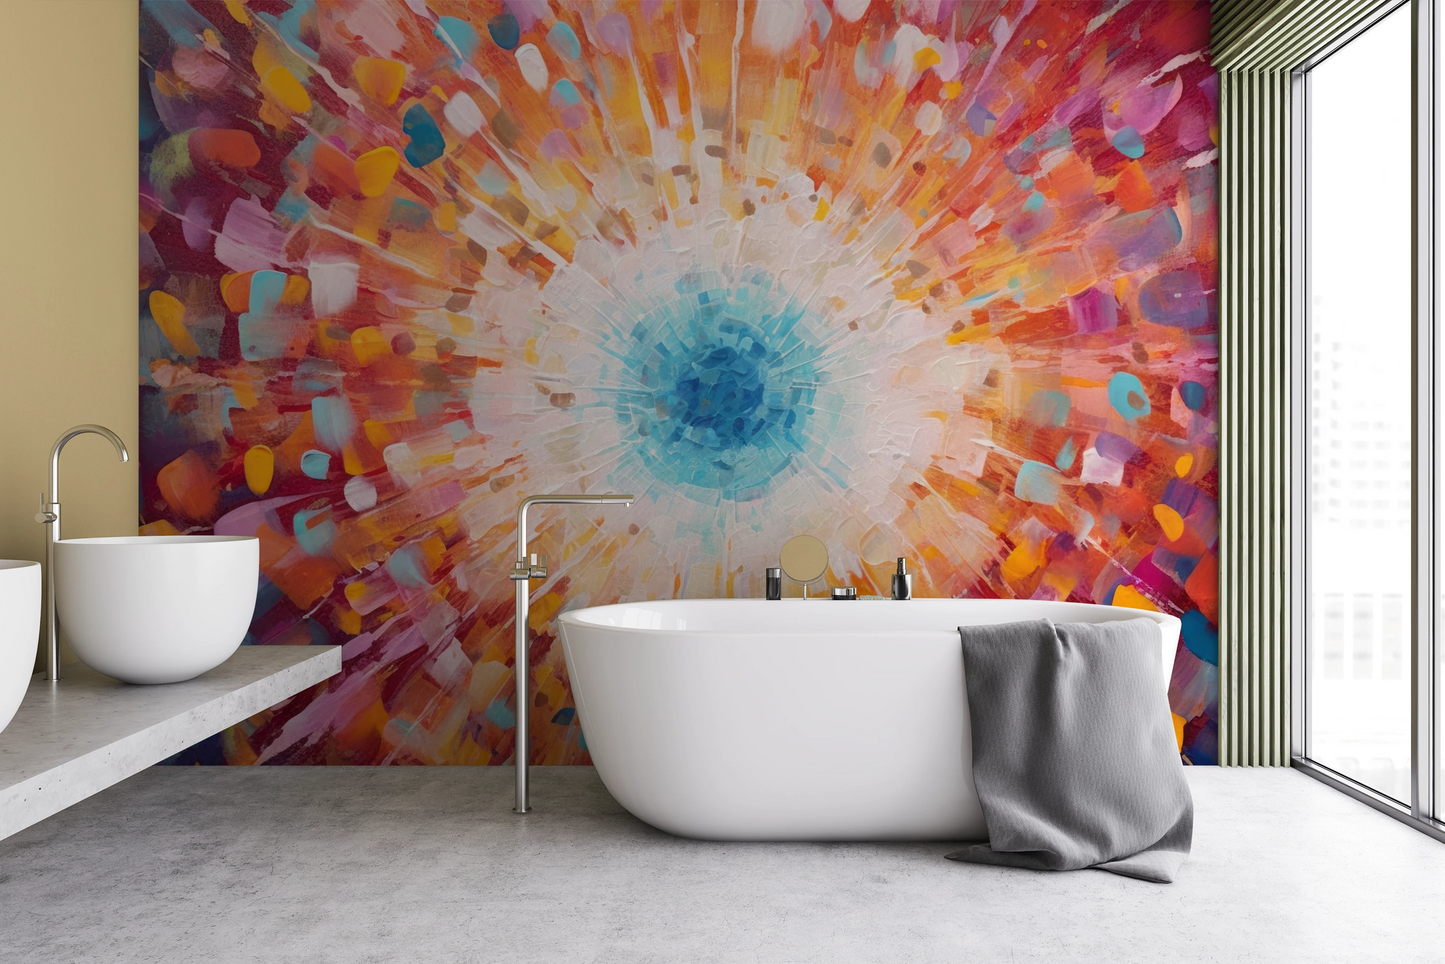 Wzór fototapety malowanej o nazwie Vibrant Mosaic pokazanej w aranżacji wnętrza.